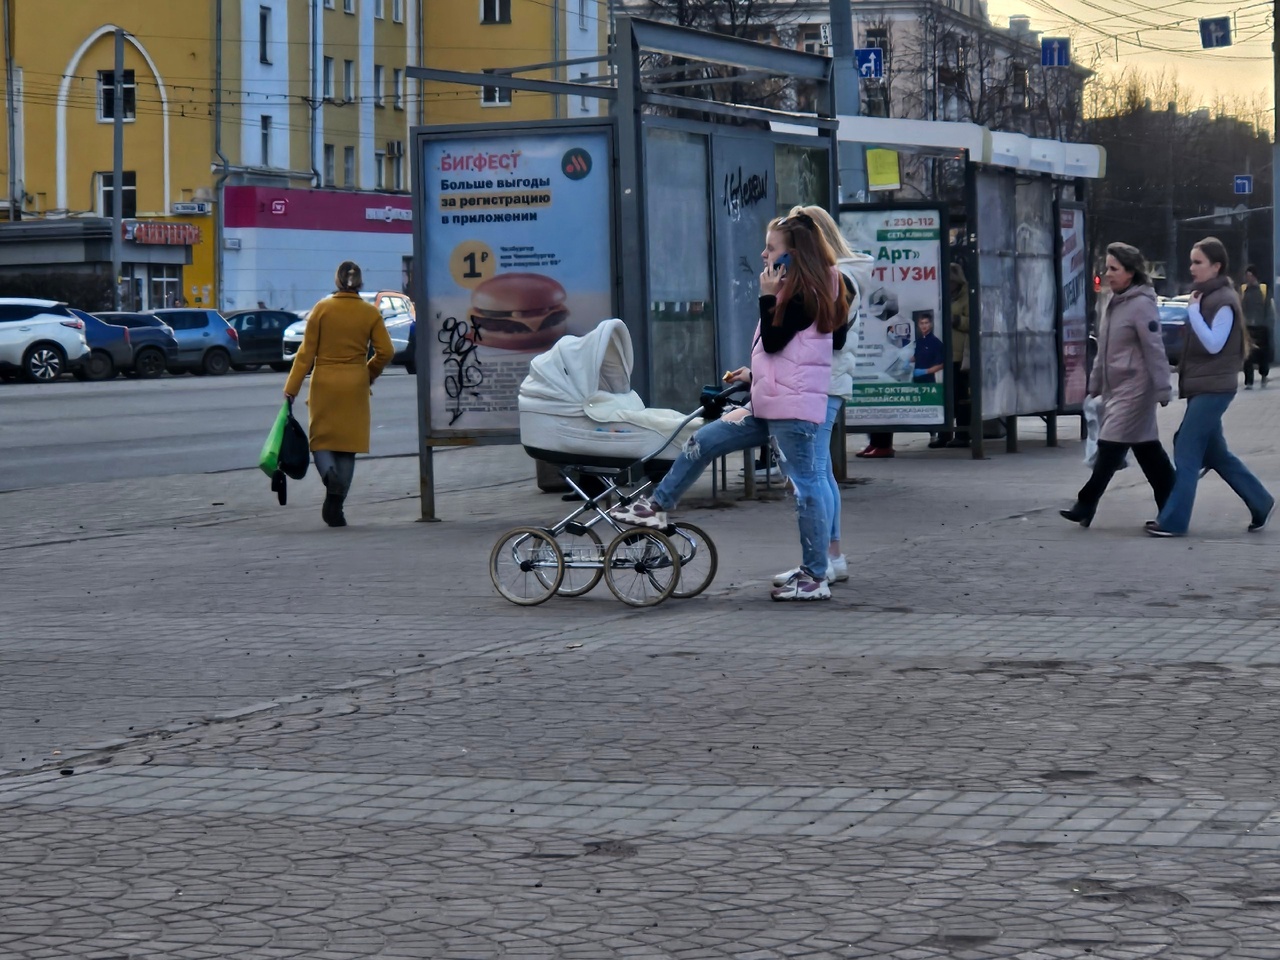 "Малышка задыхалась в коляске": житель Ярославской области спас маленькую девочку от смерти